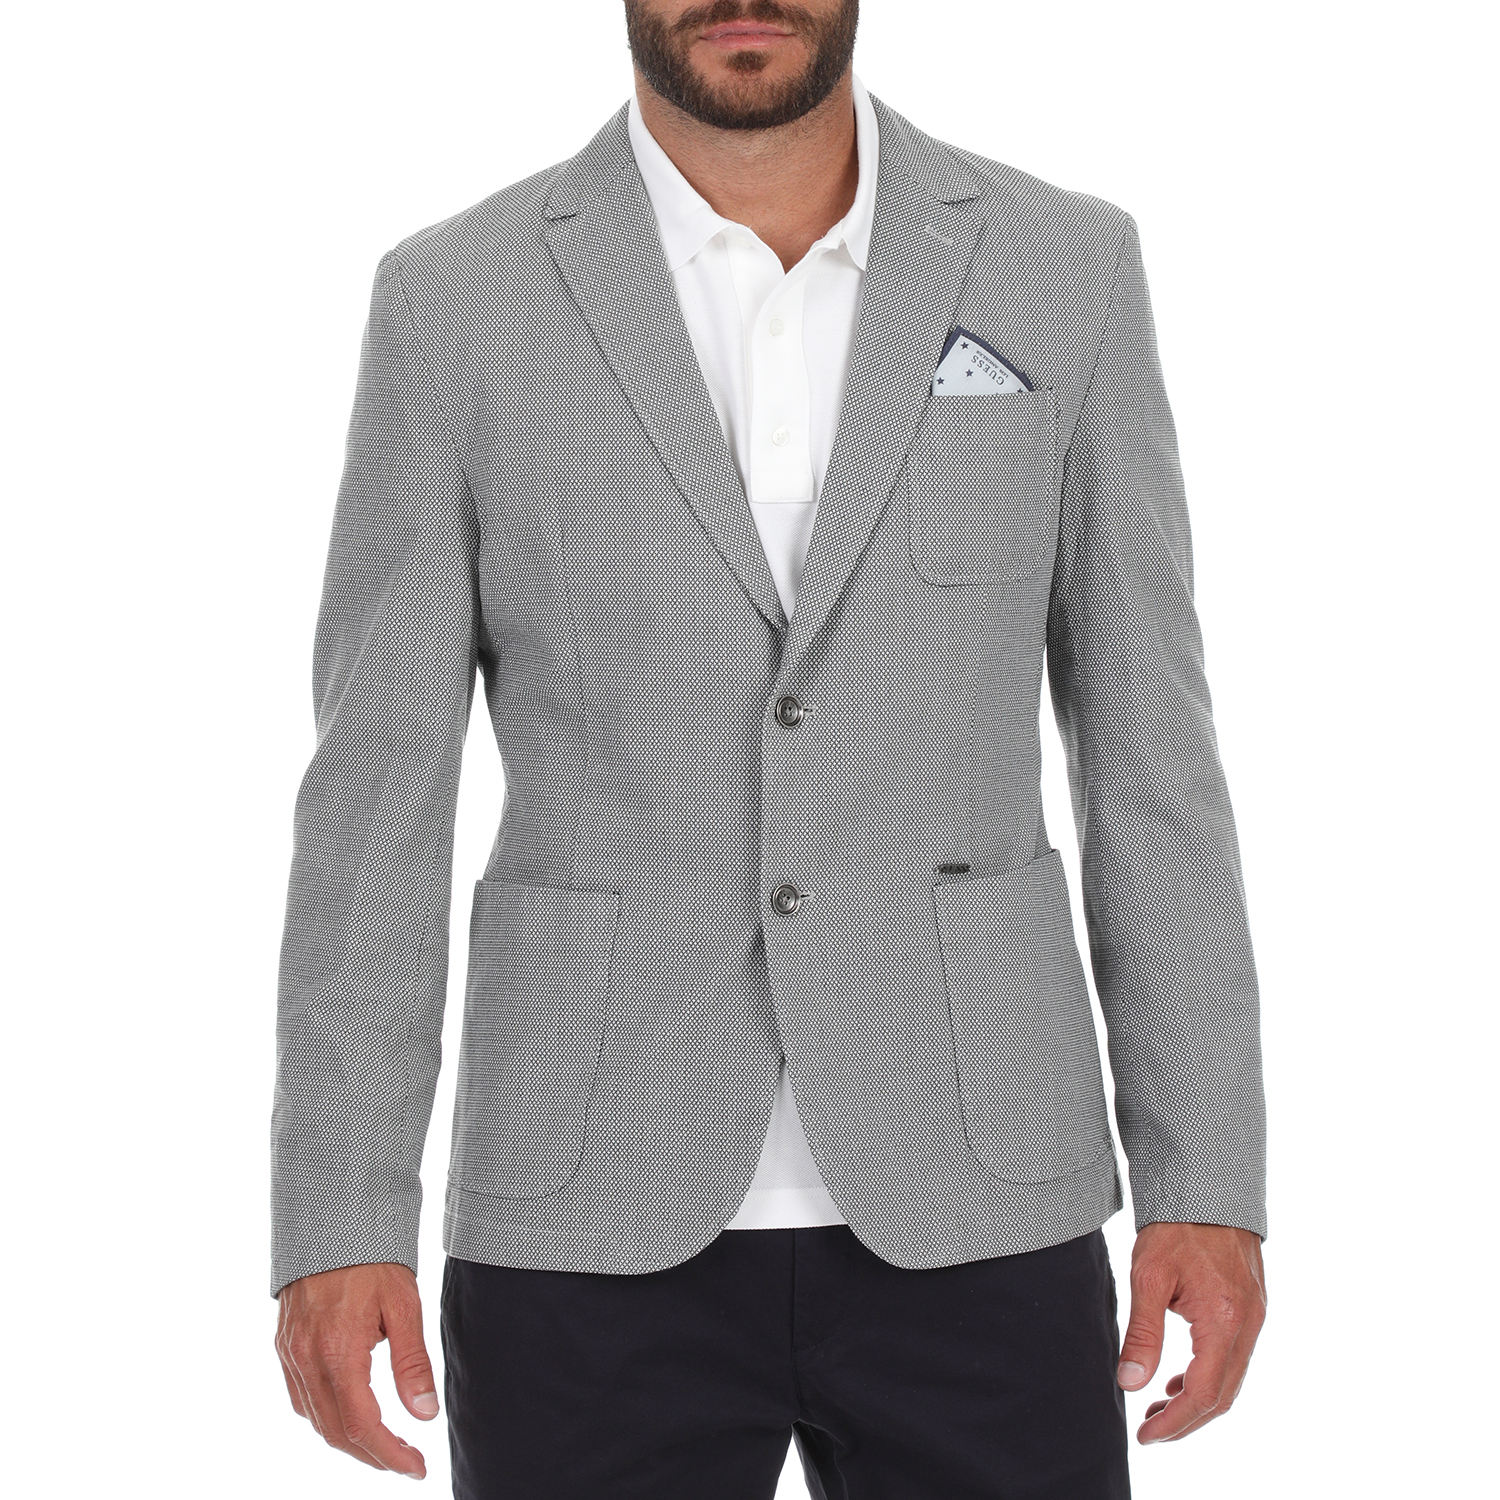 Ανδρικά/Ρούχα/Πανωφόρια/Σακάκια GUESS - Ανδρικό σακάκι blazer GUESS TYRON γκρι